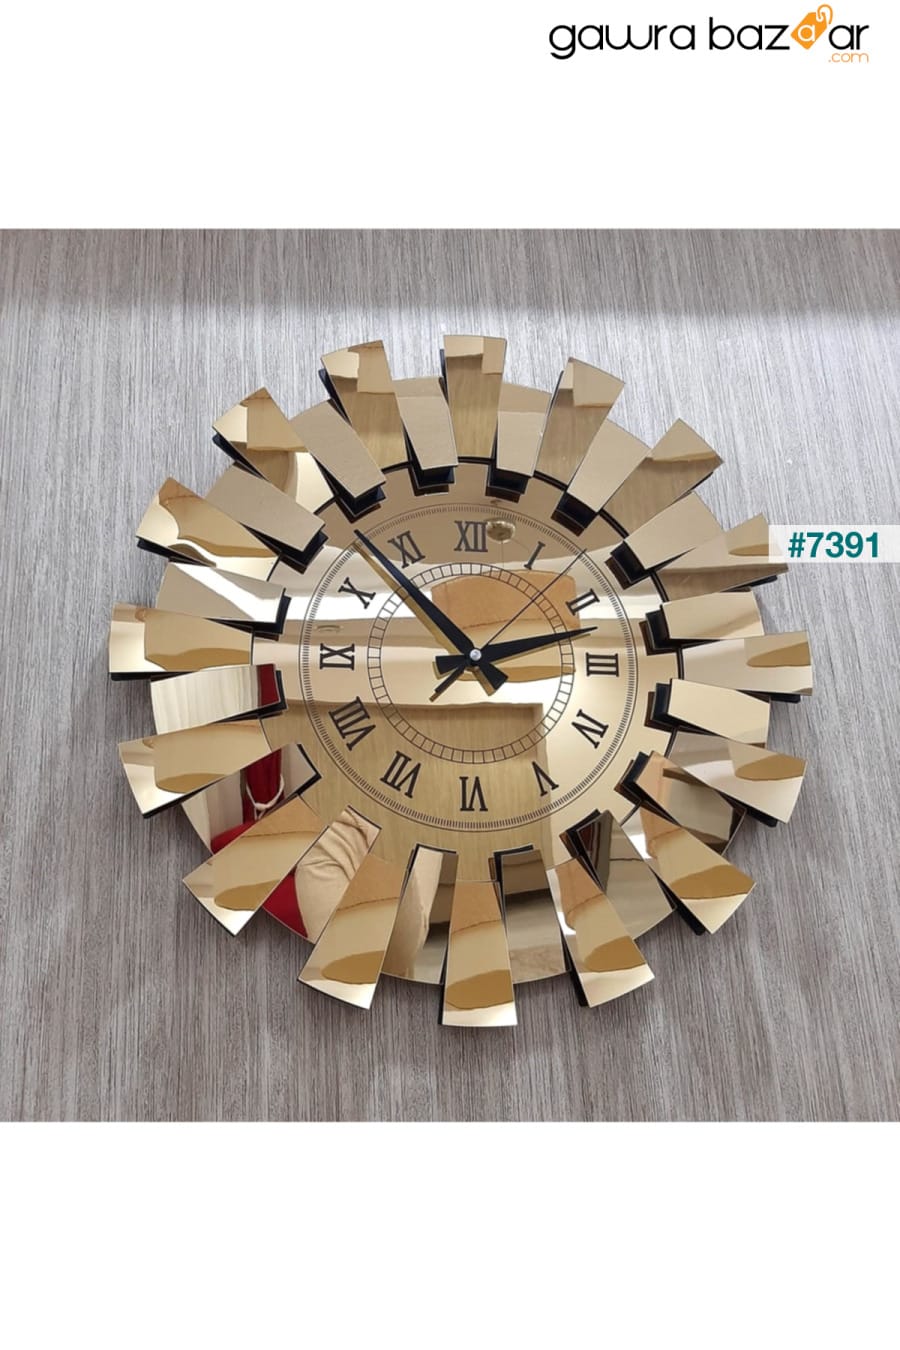 نموذج بيانو ثلاثي الأبعاد ساعة حائط معكوسة أرقام رومانية ذهبية TUĞBArt 1